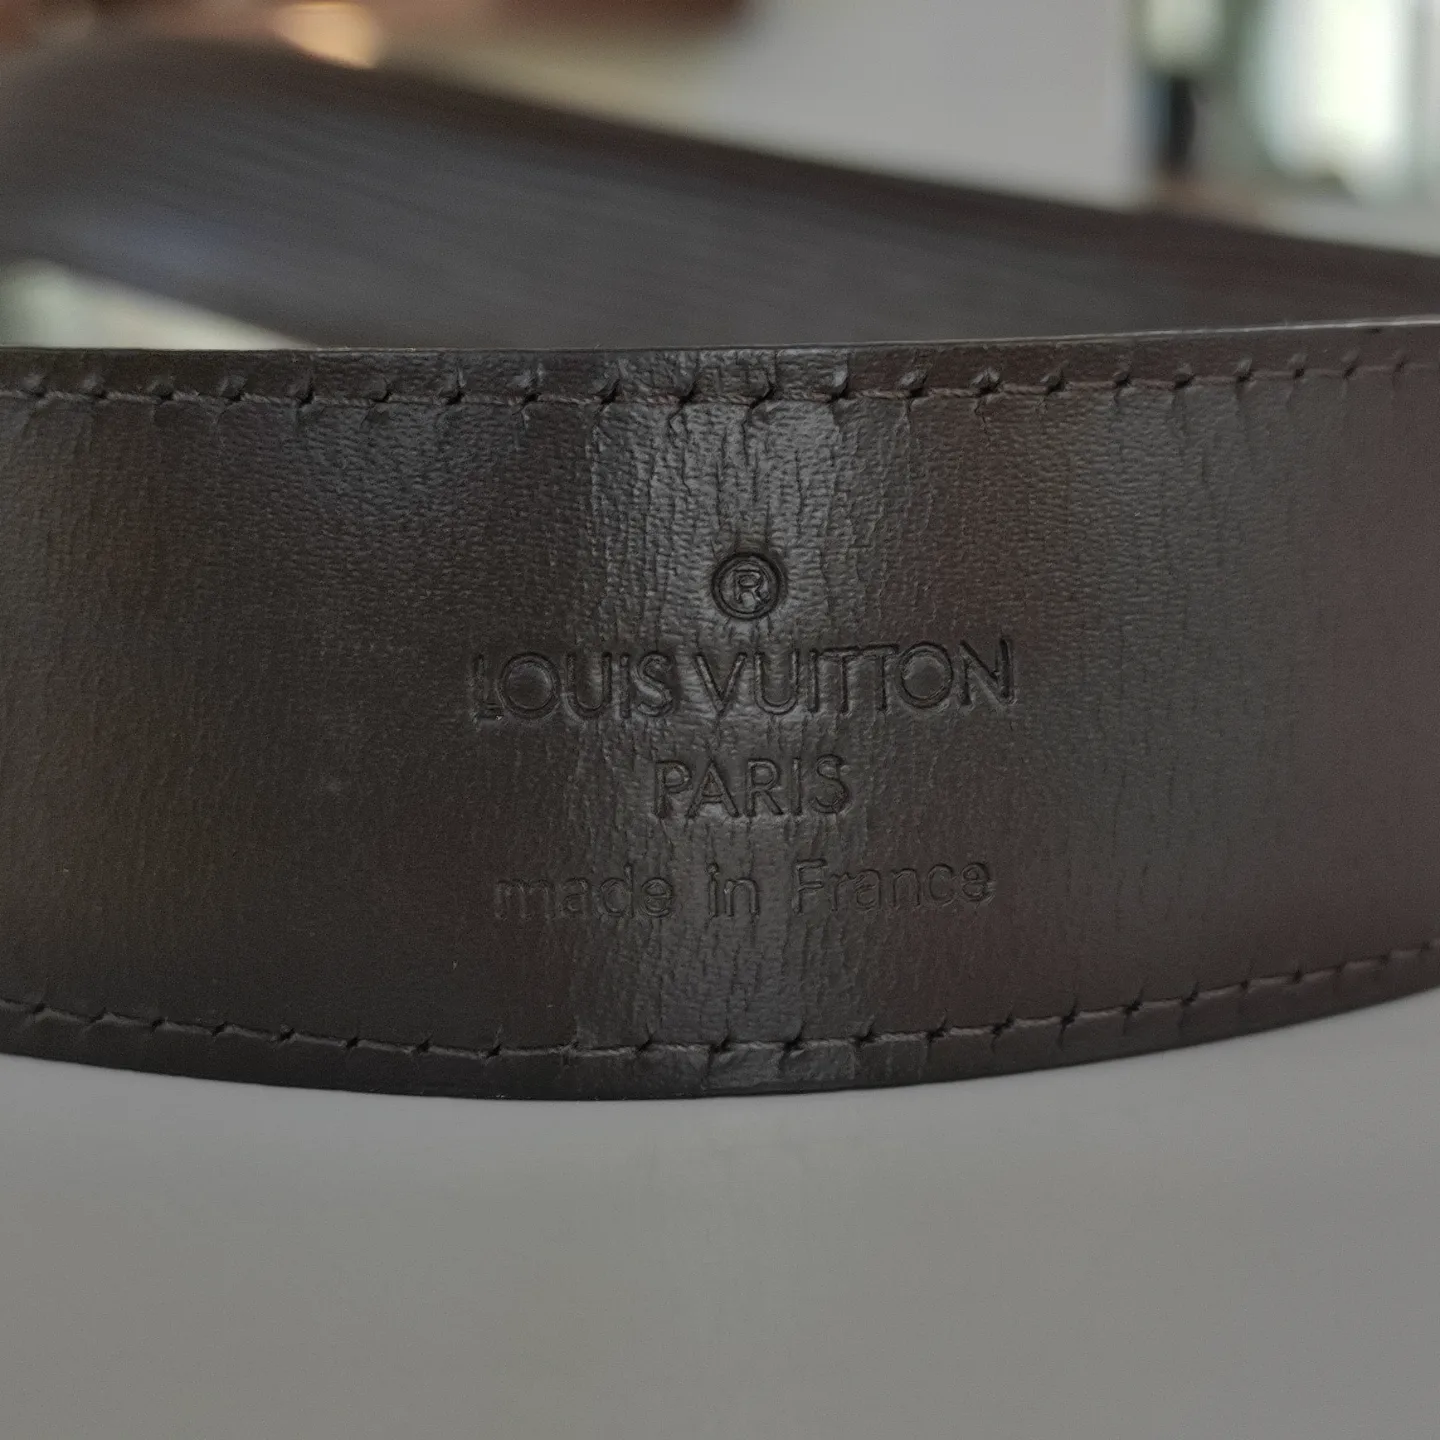 Cinture regular Louis Vuitton - Lampoo